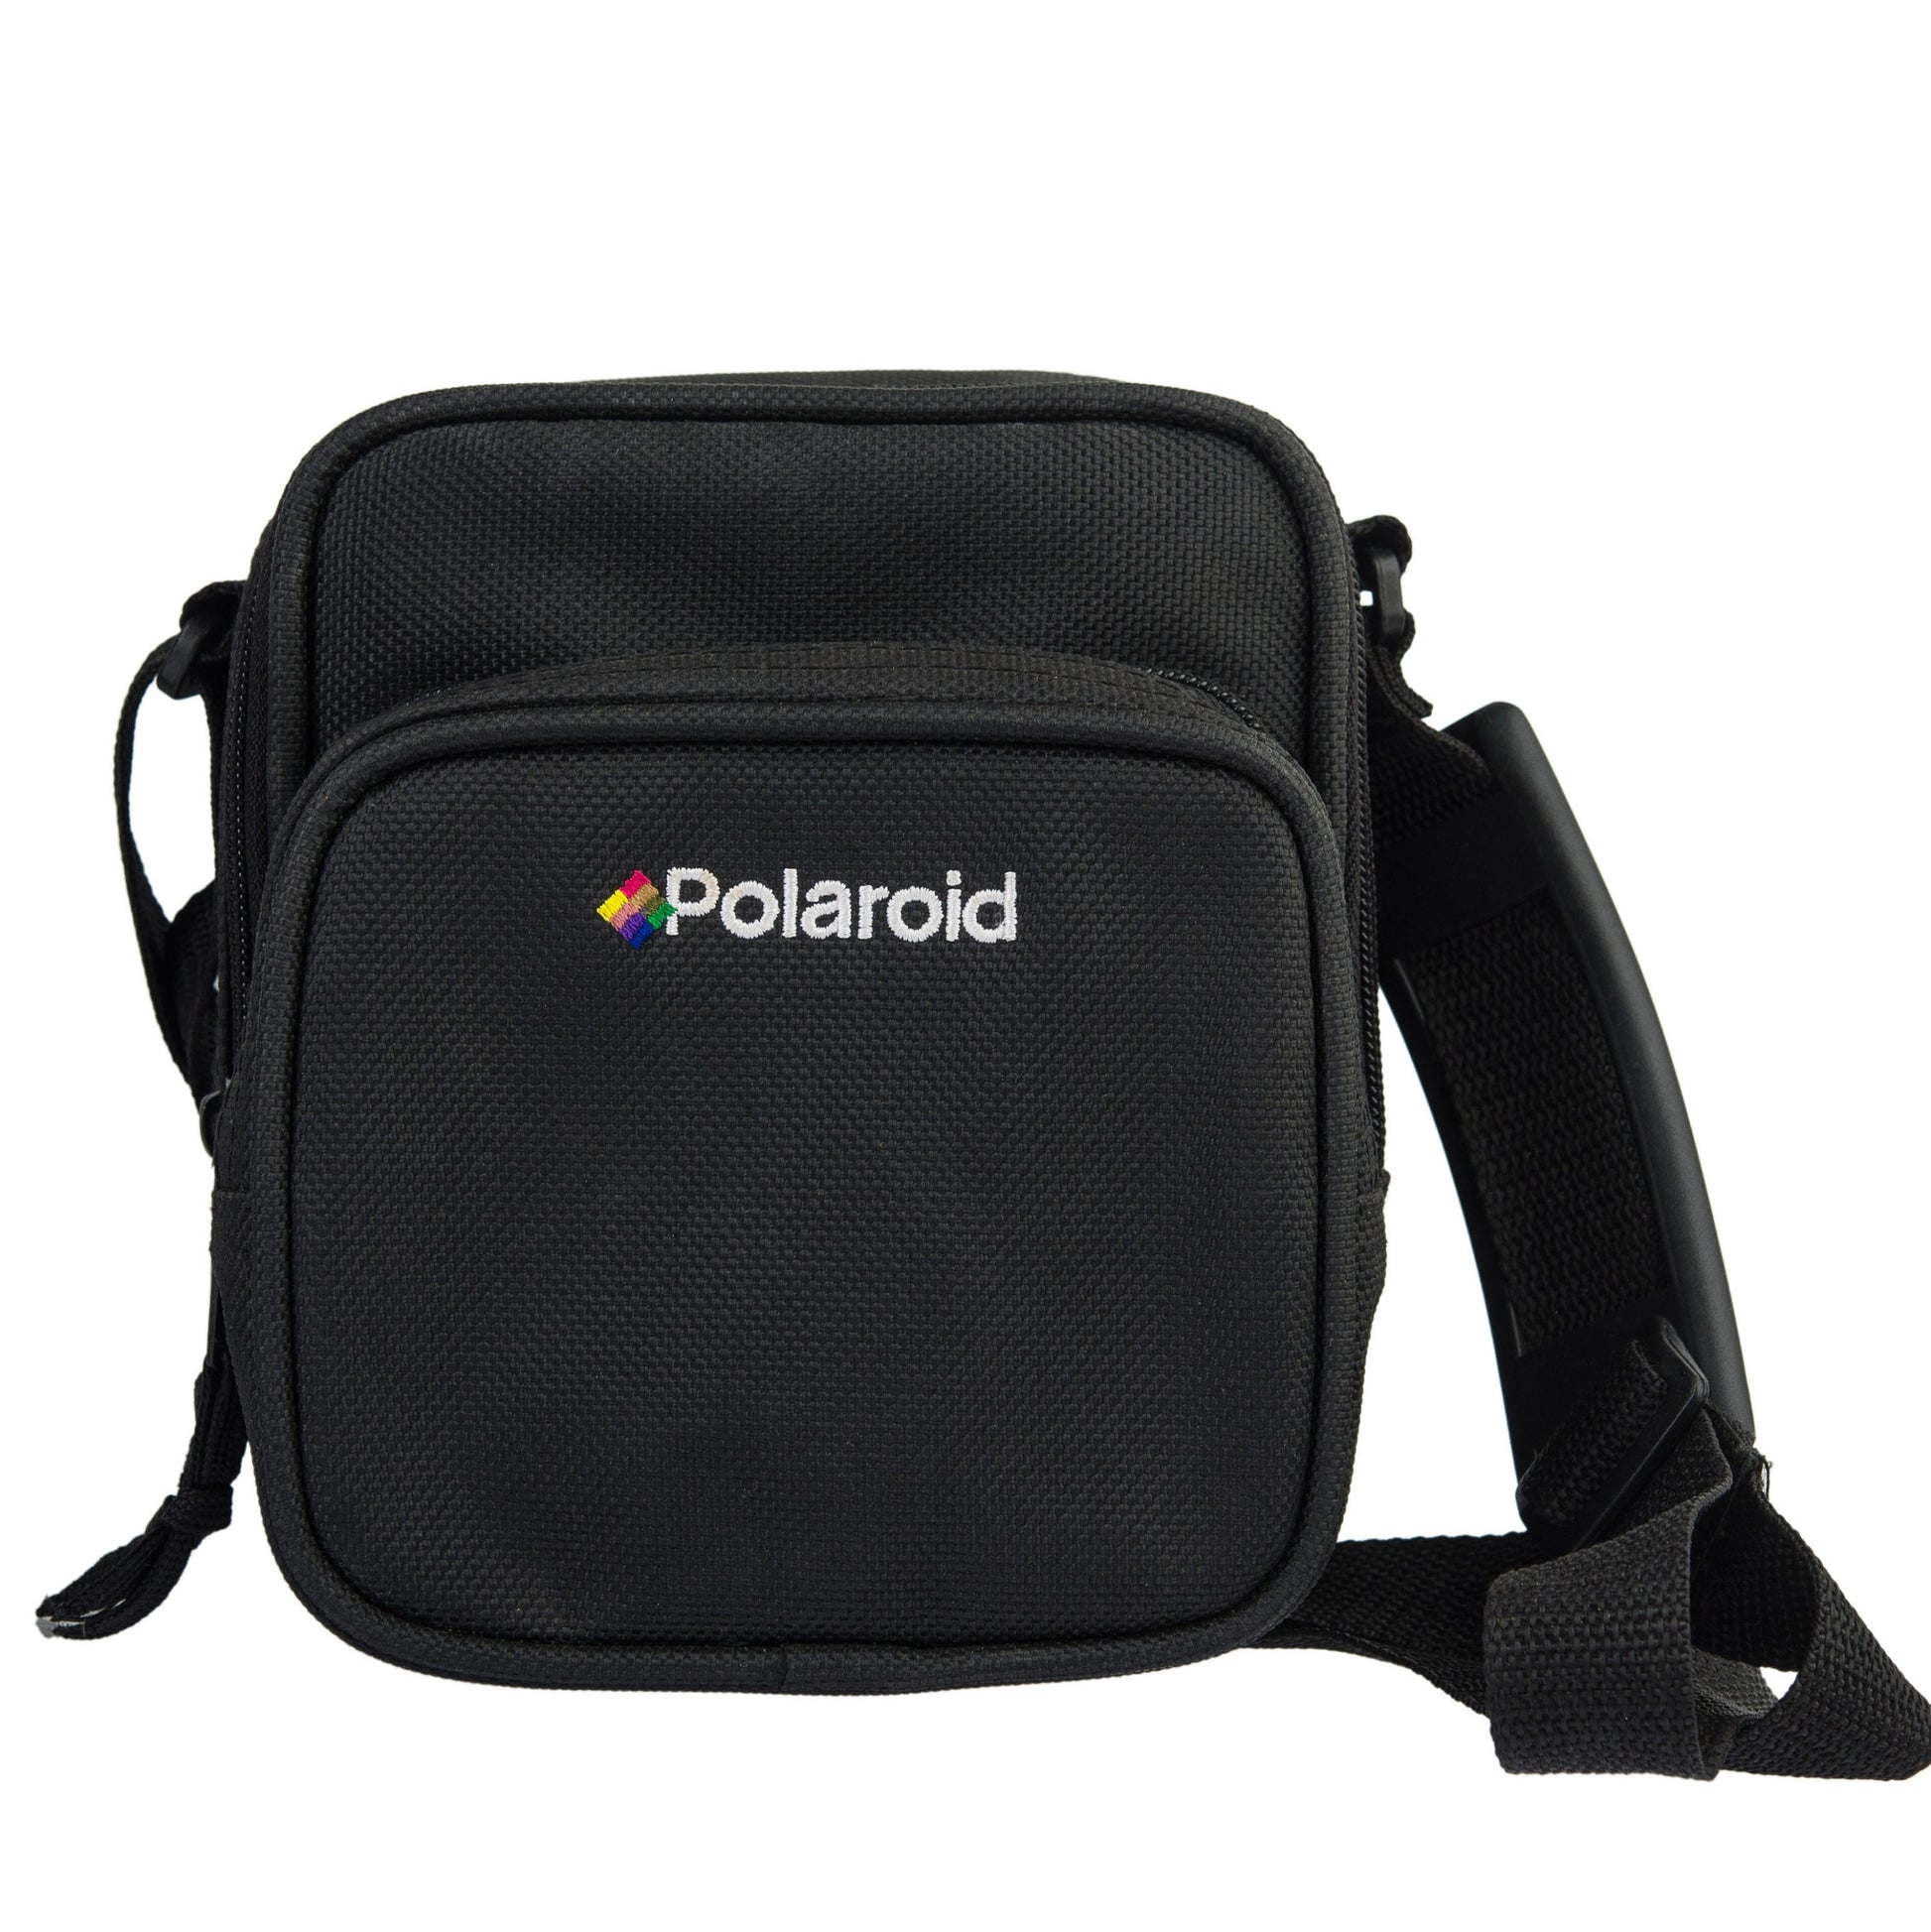 Polaroid Camera Bag,Polaroid 600, Original POLAROID Bag, Birthday Gift, Photographer Gift, Vintage Bag, Fabric Bag - Vintage Polaroid Instant Cameras